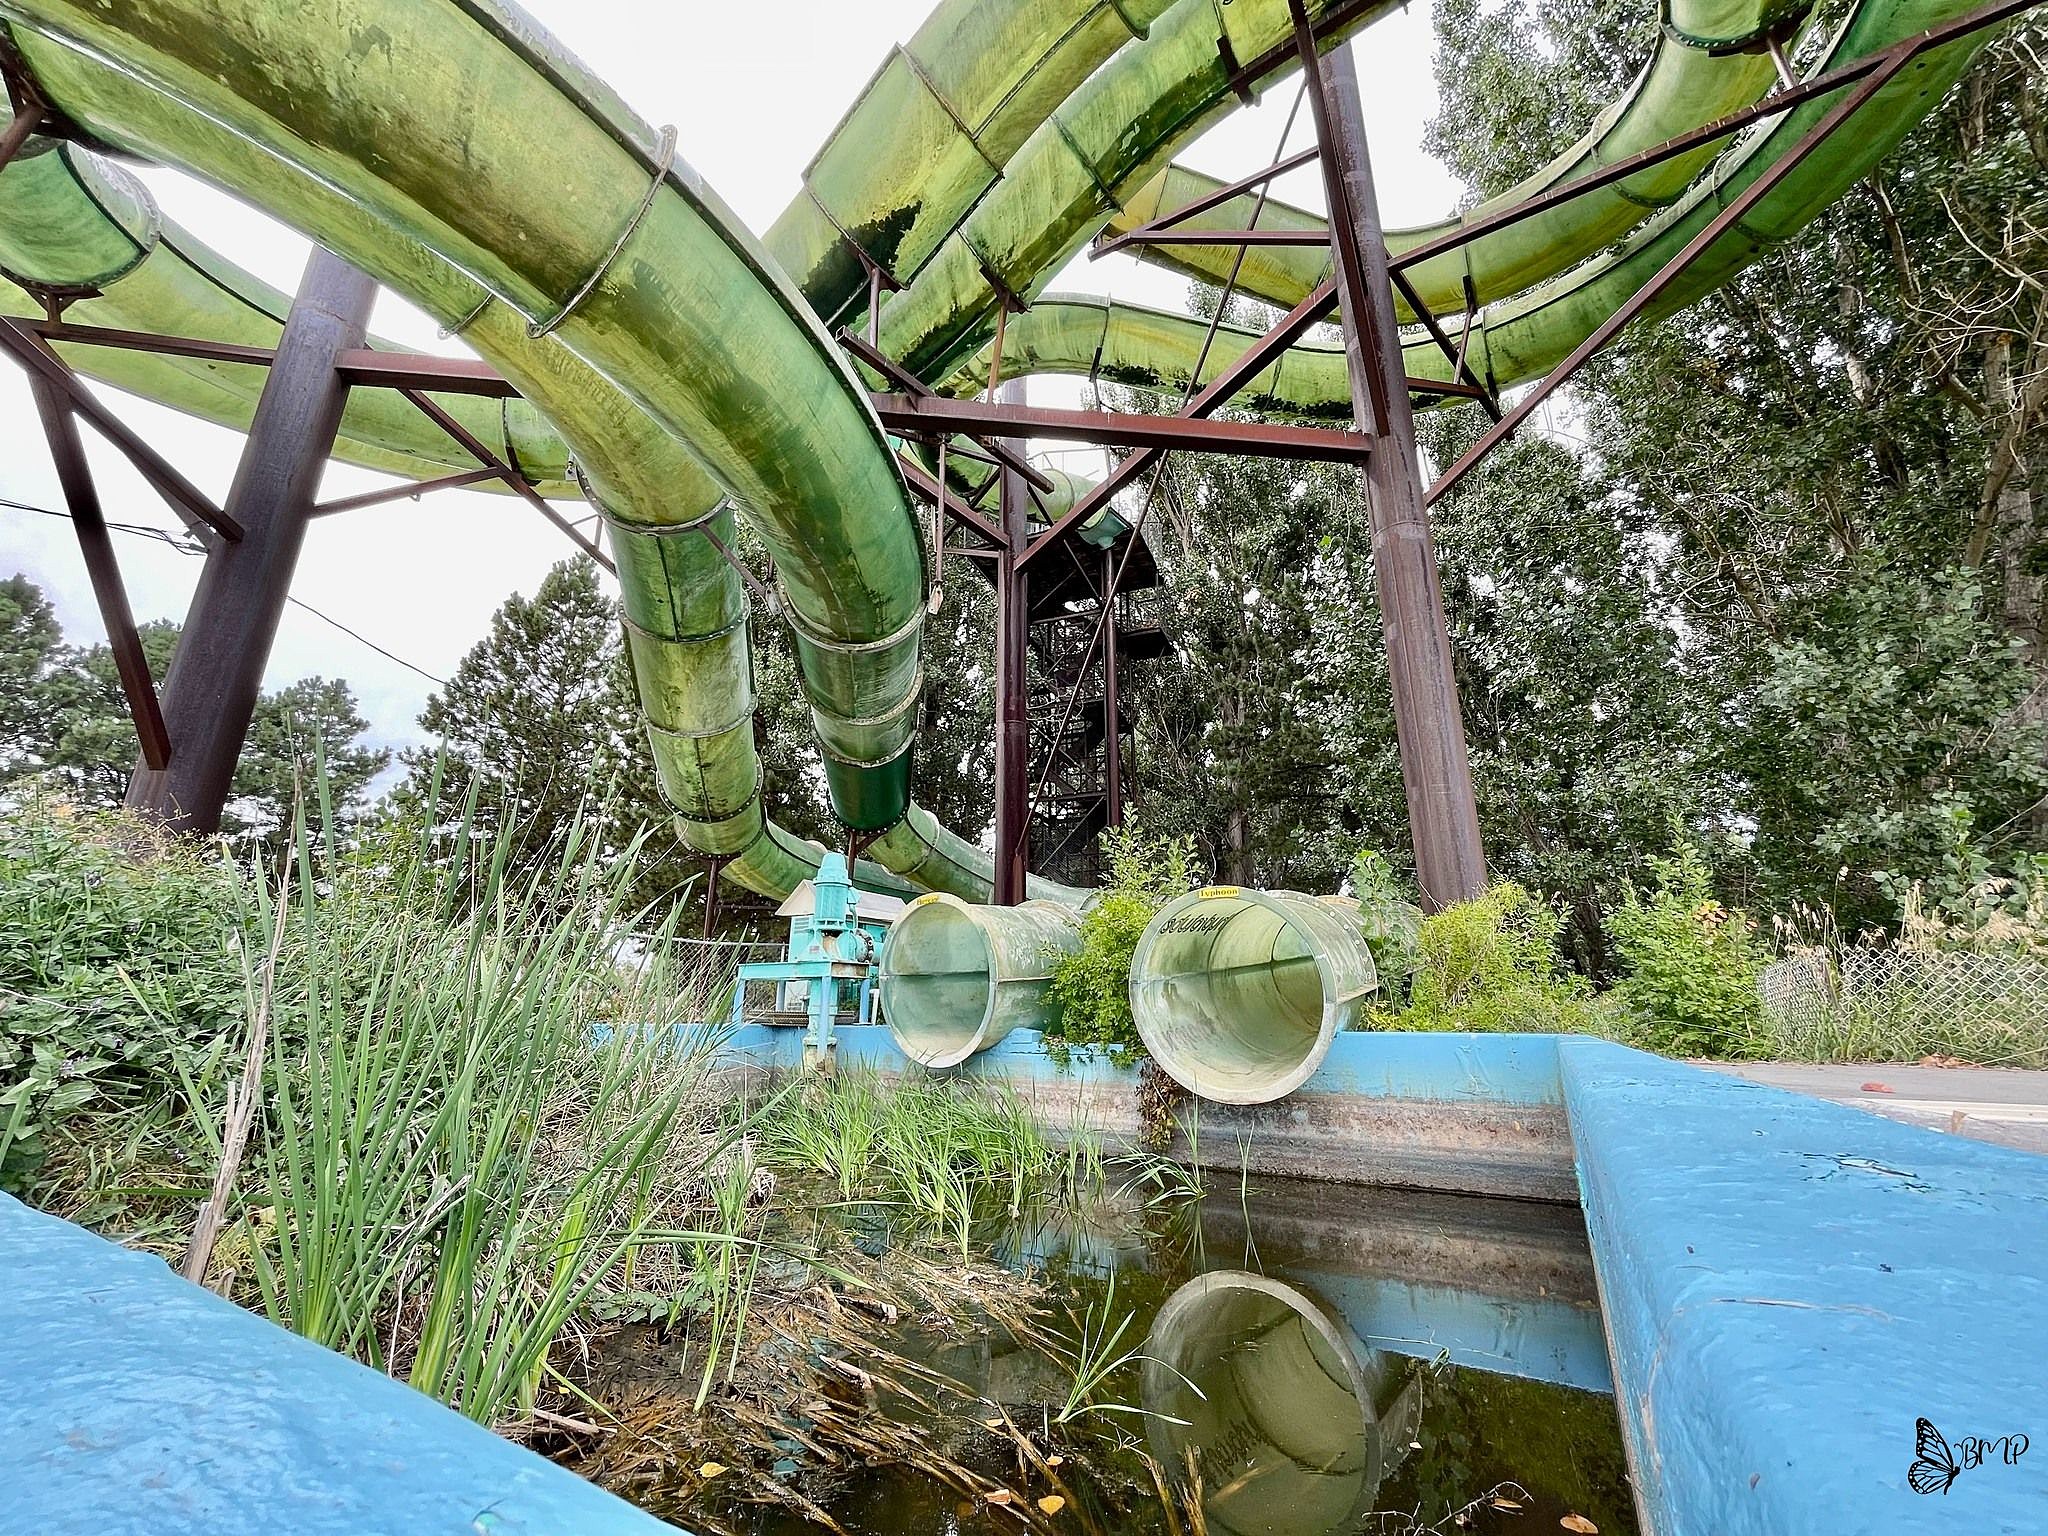 abandoned Wet N Wild waterpark in Las Vegas